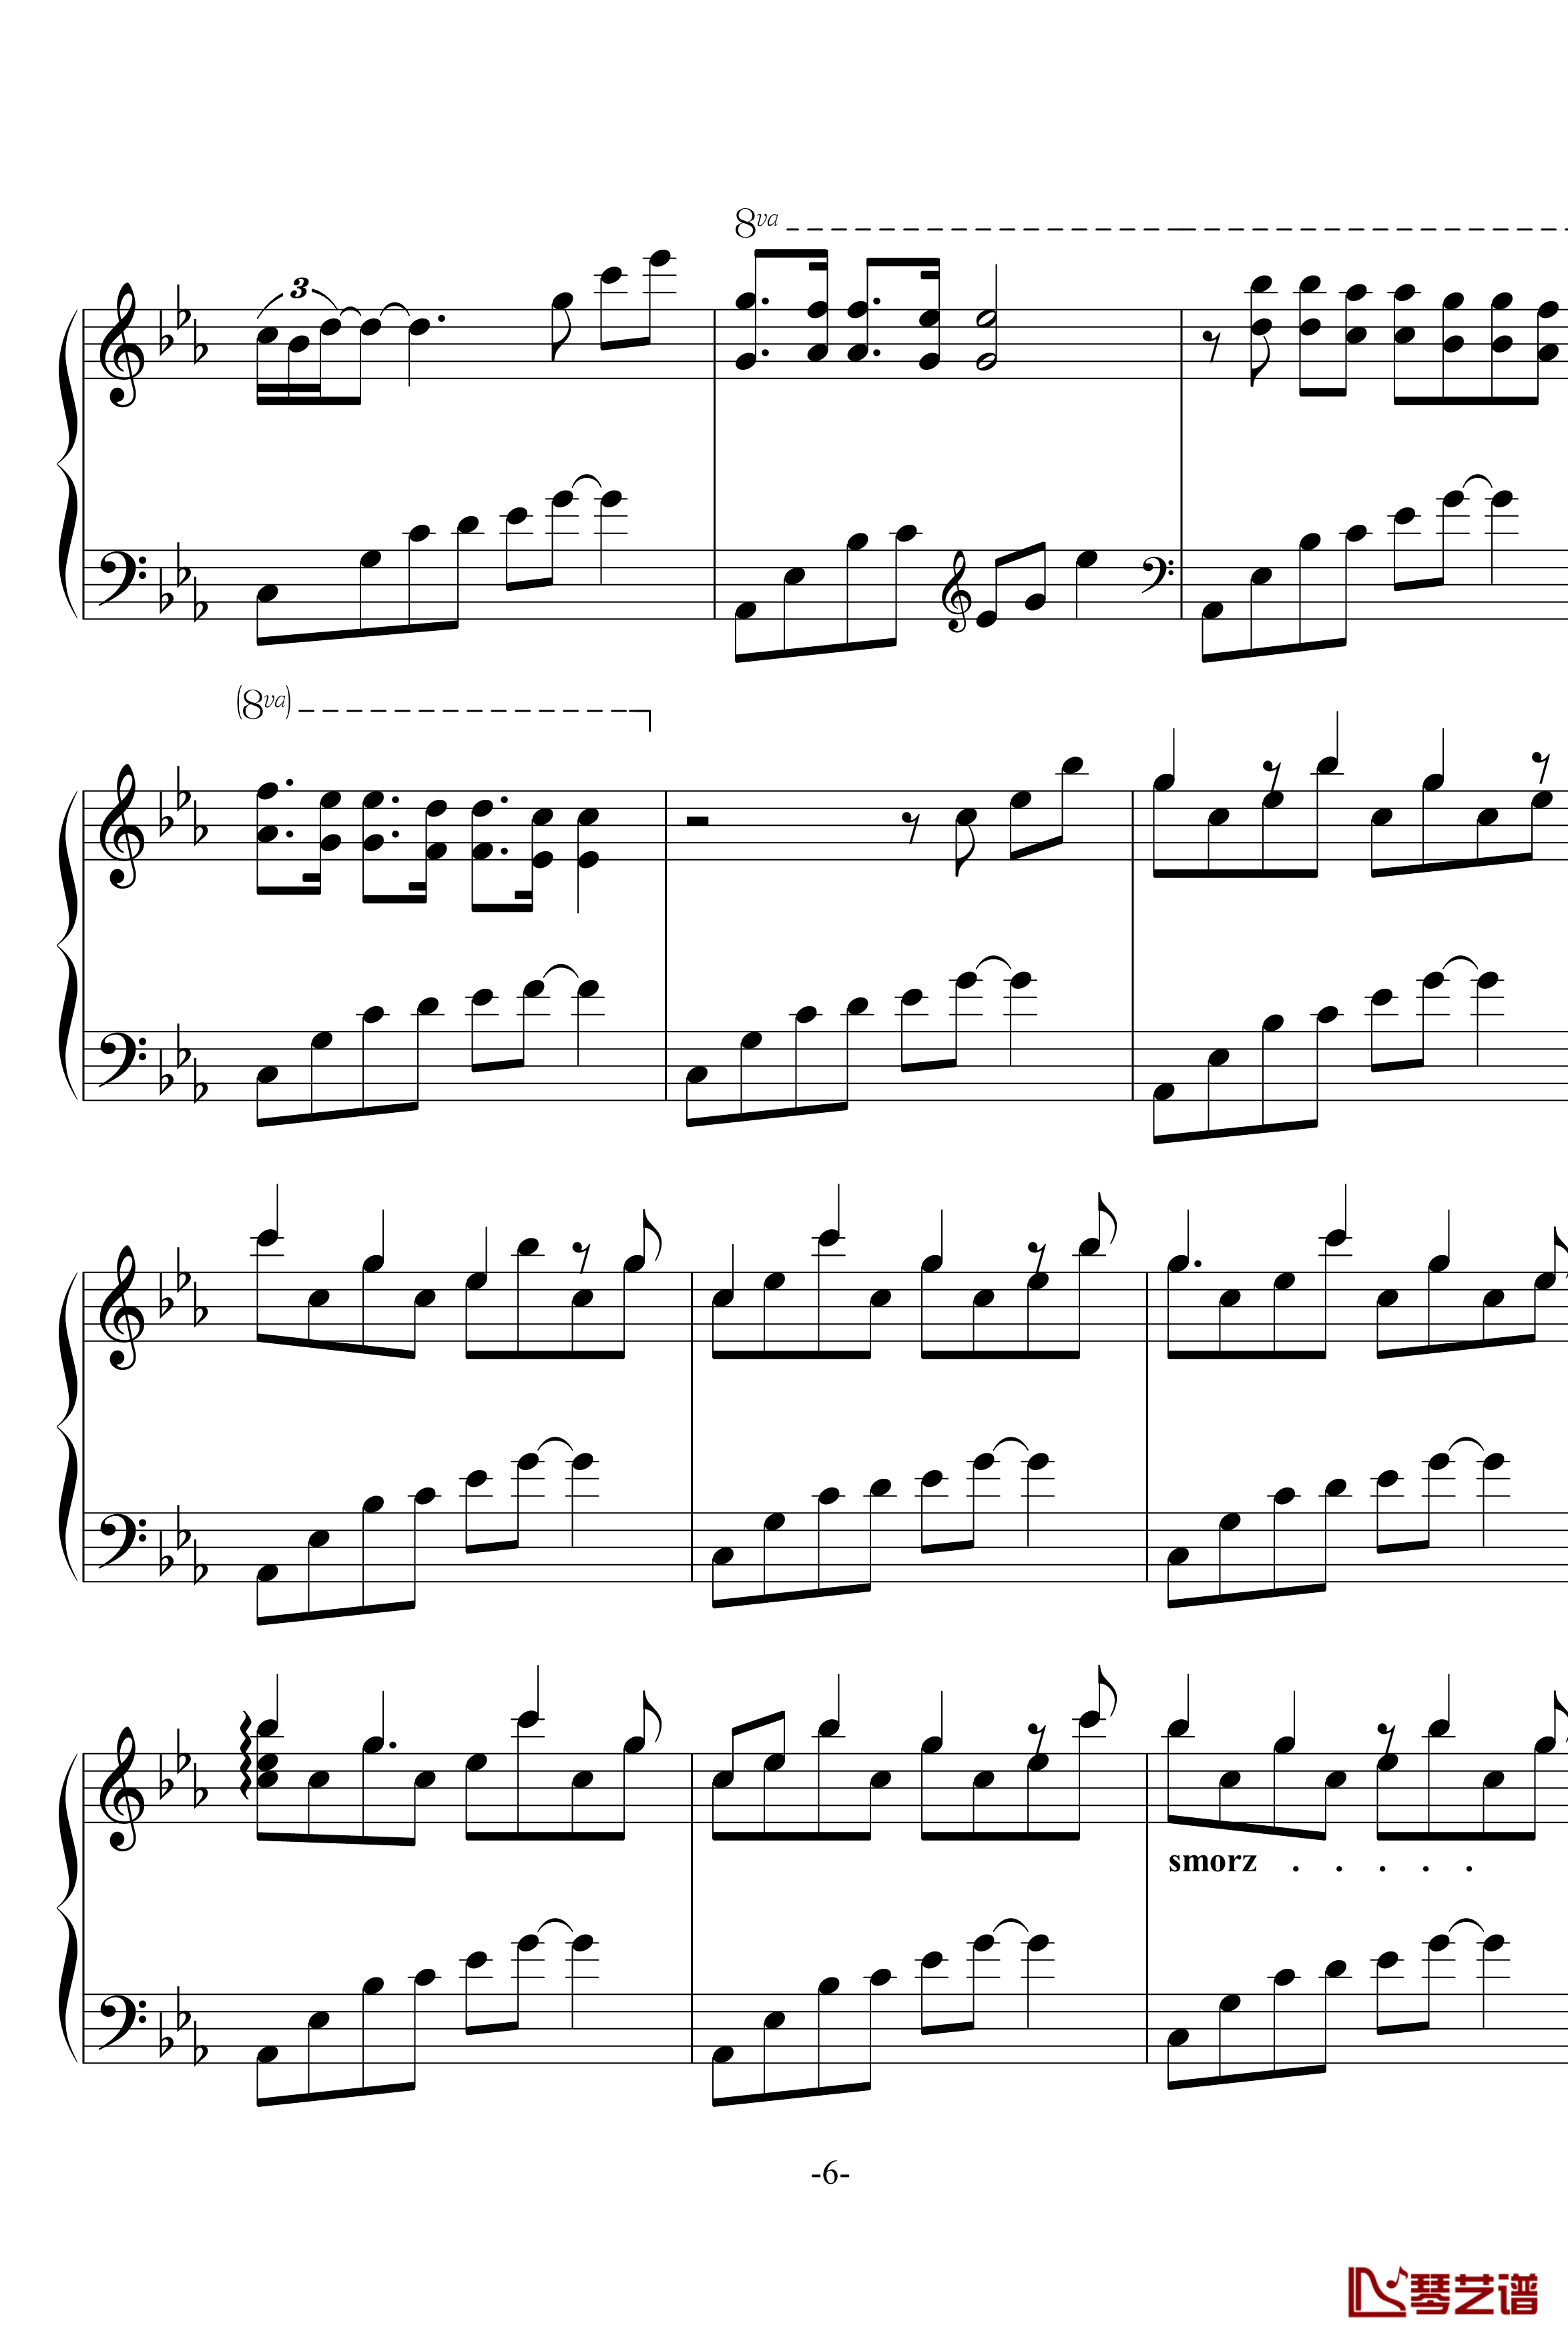 幽灵公主笛子与钢琴钢琴谱-OST-久石让6